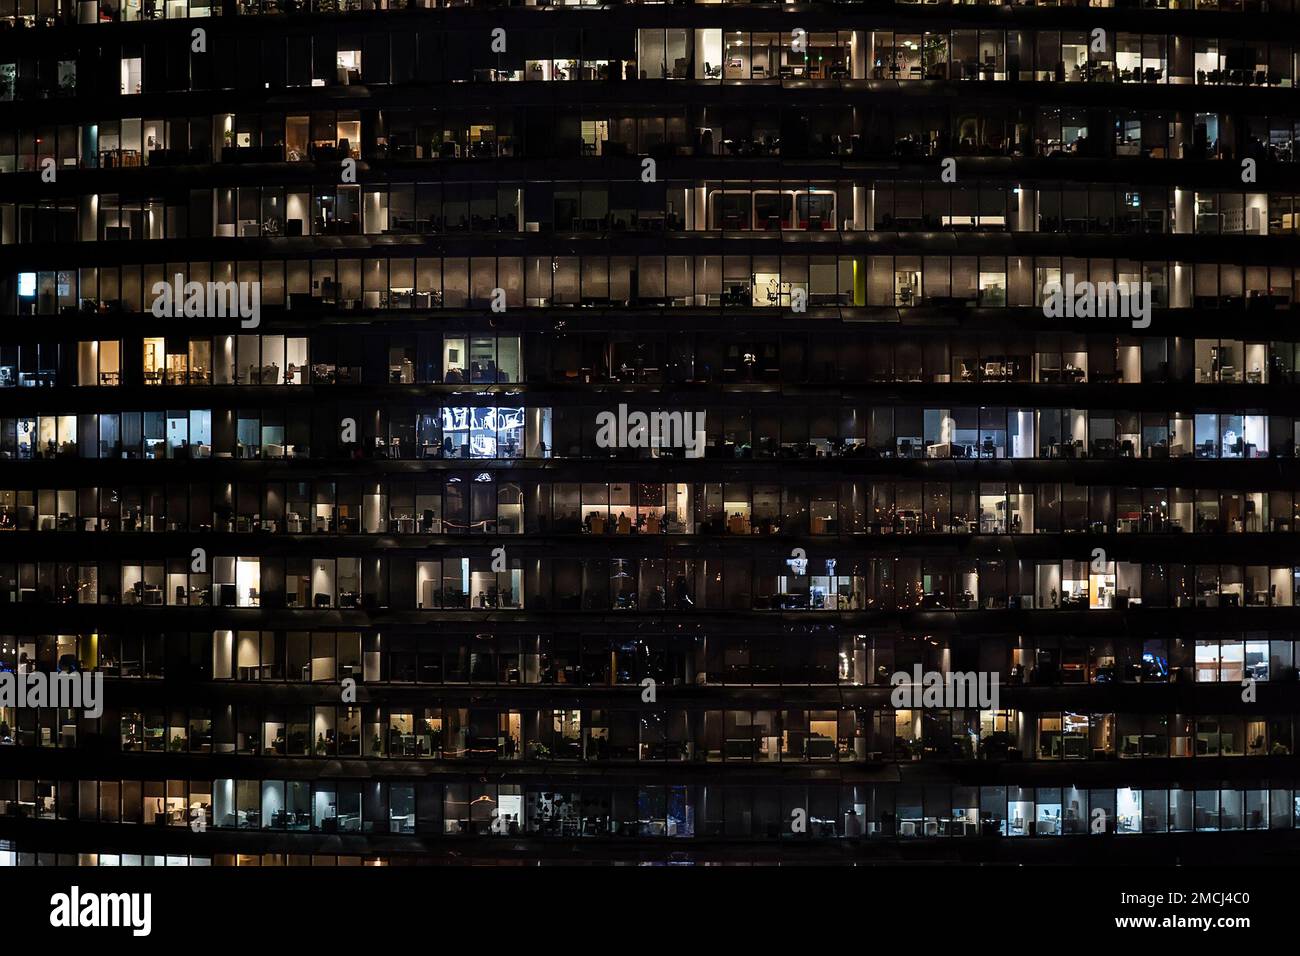 Von der Vorderseite aus blickt man auf die Nachtfassade des Gebäudes mit vielen Fenstern und Licht. Leben in jedem Fenster. Nachtsicht auf die Glasfassade eines Bürohochhauses Stockfoto